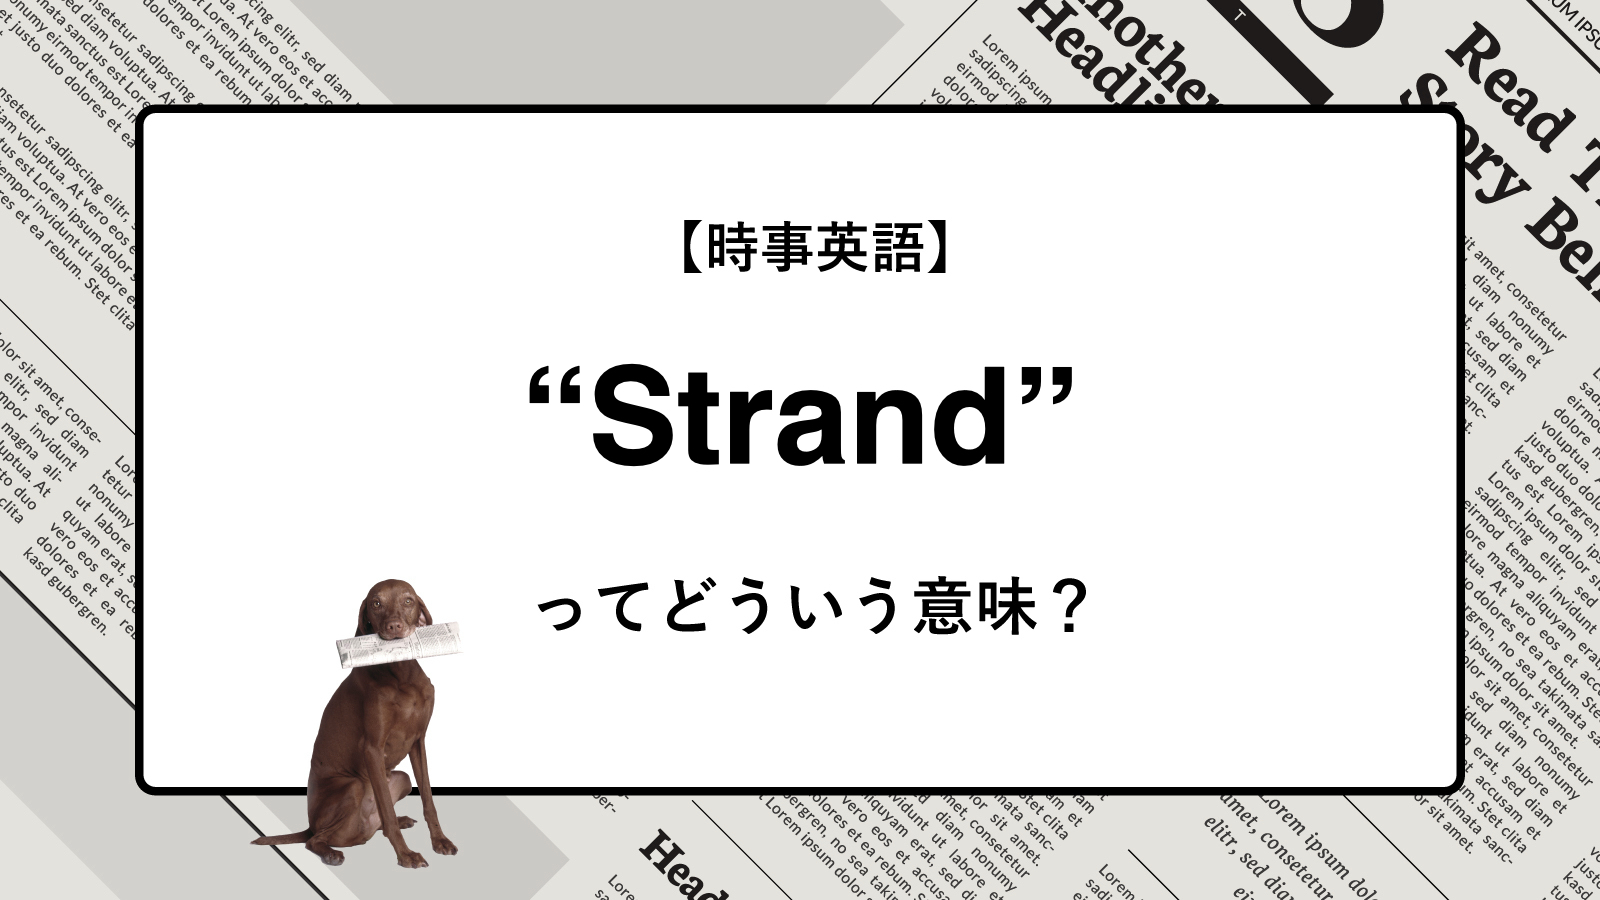 【時事英語】“Strand” ってどういう意味？ | ニュースの「キーワード」で語彙力を身につける